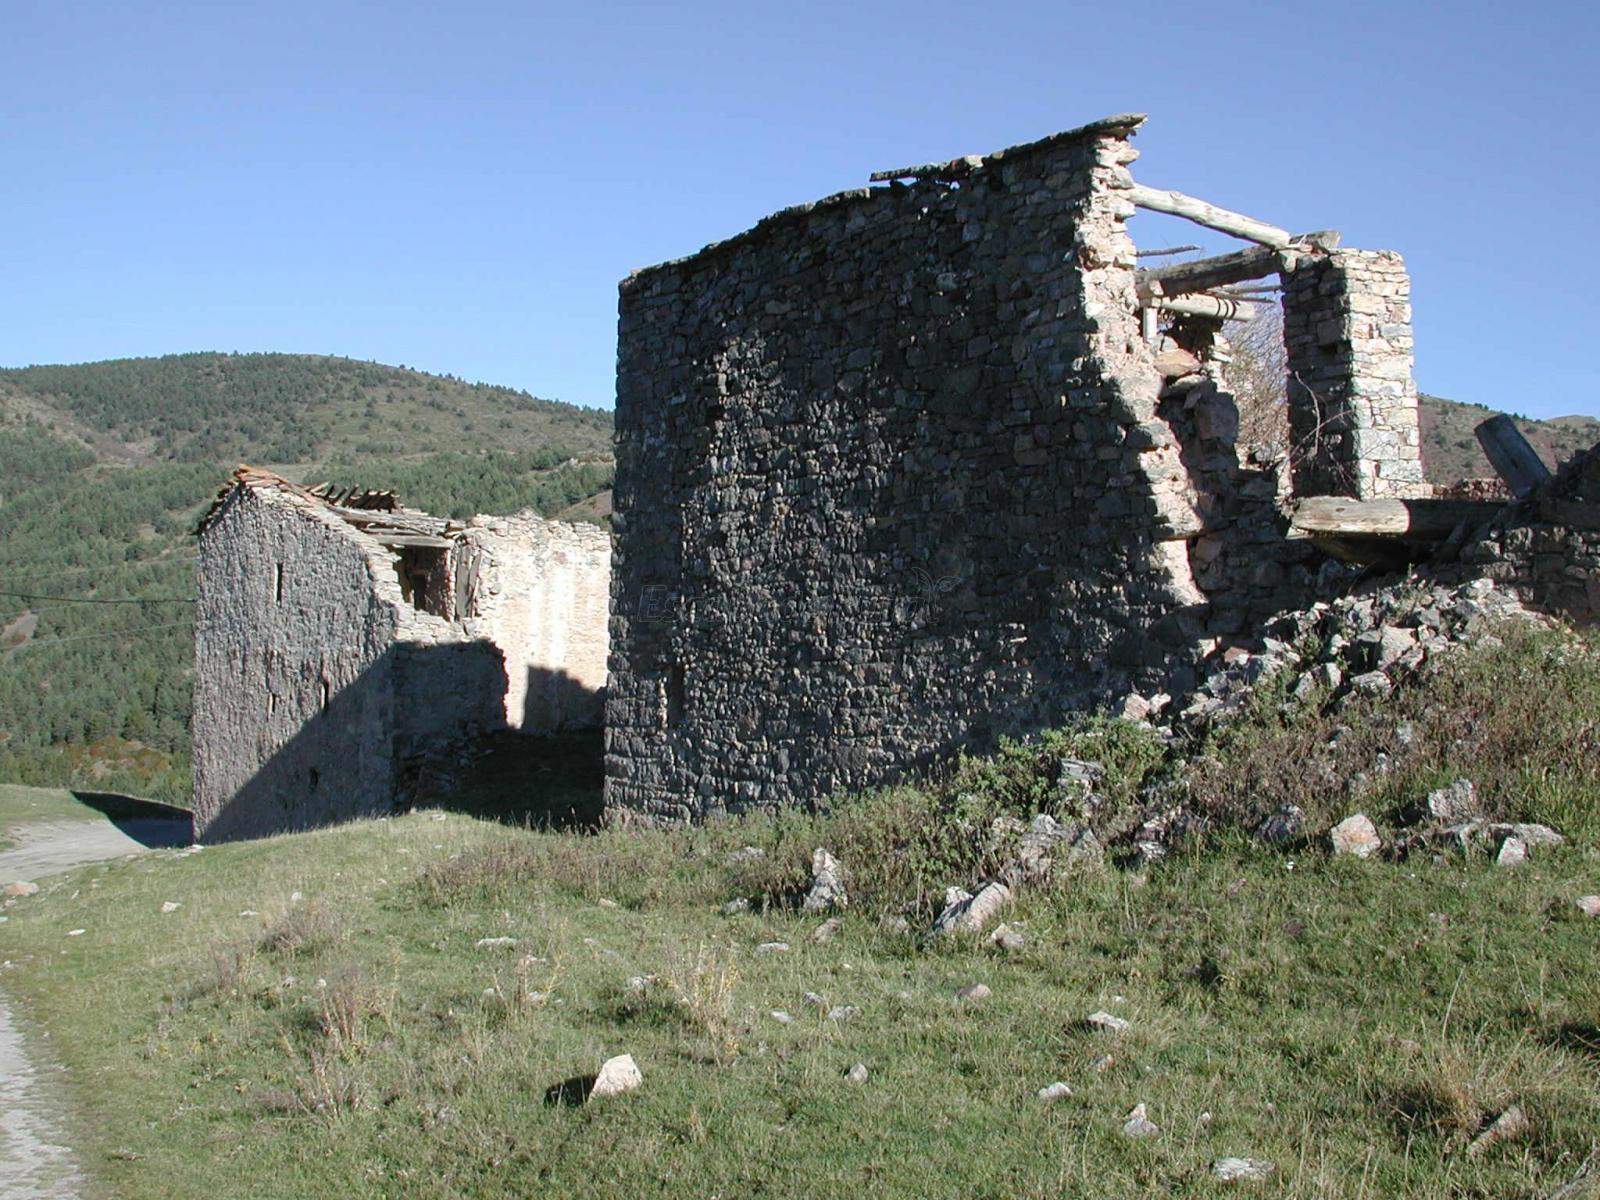 Una empresa d'ecoturisme recuperarà amb criteris sostenibles un poble abandonat del Pallars